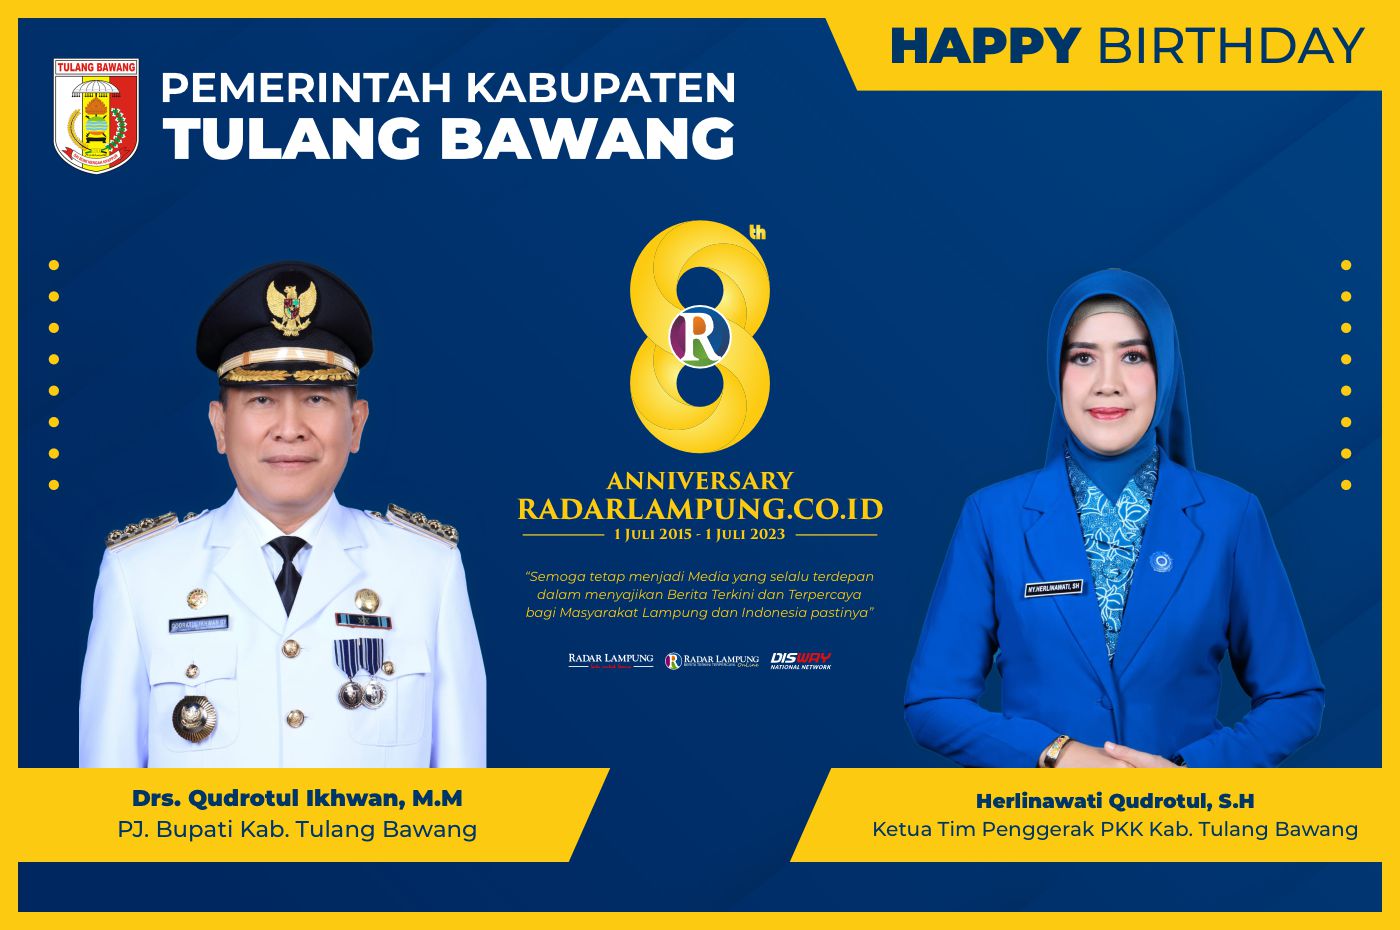 Pemerintah Kabupaten Tulang Bawang: Selamat Hari Lahir Radar Lampung Online ke-8